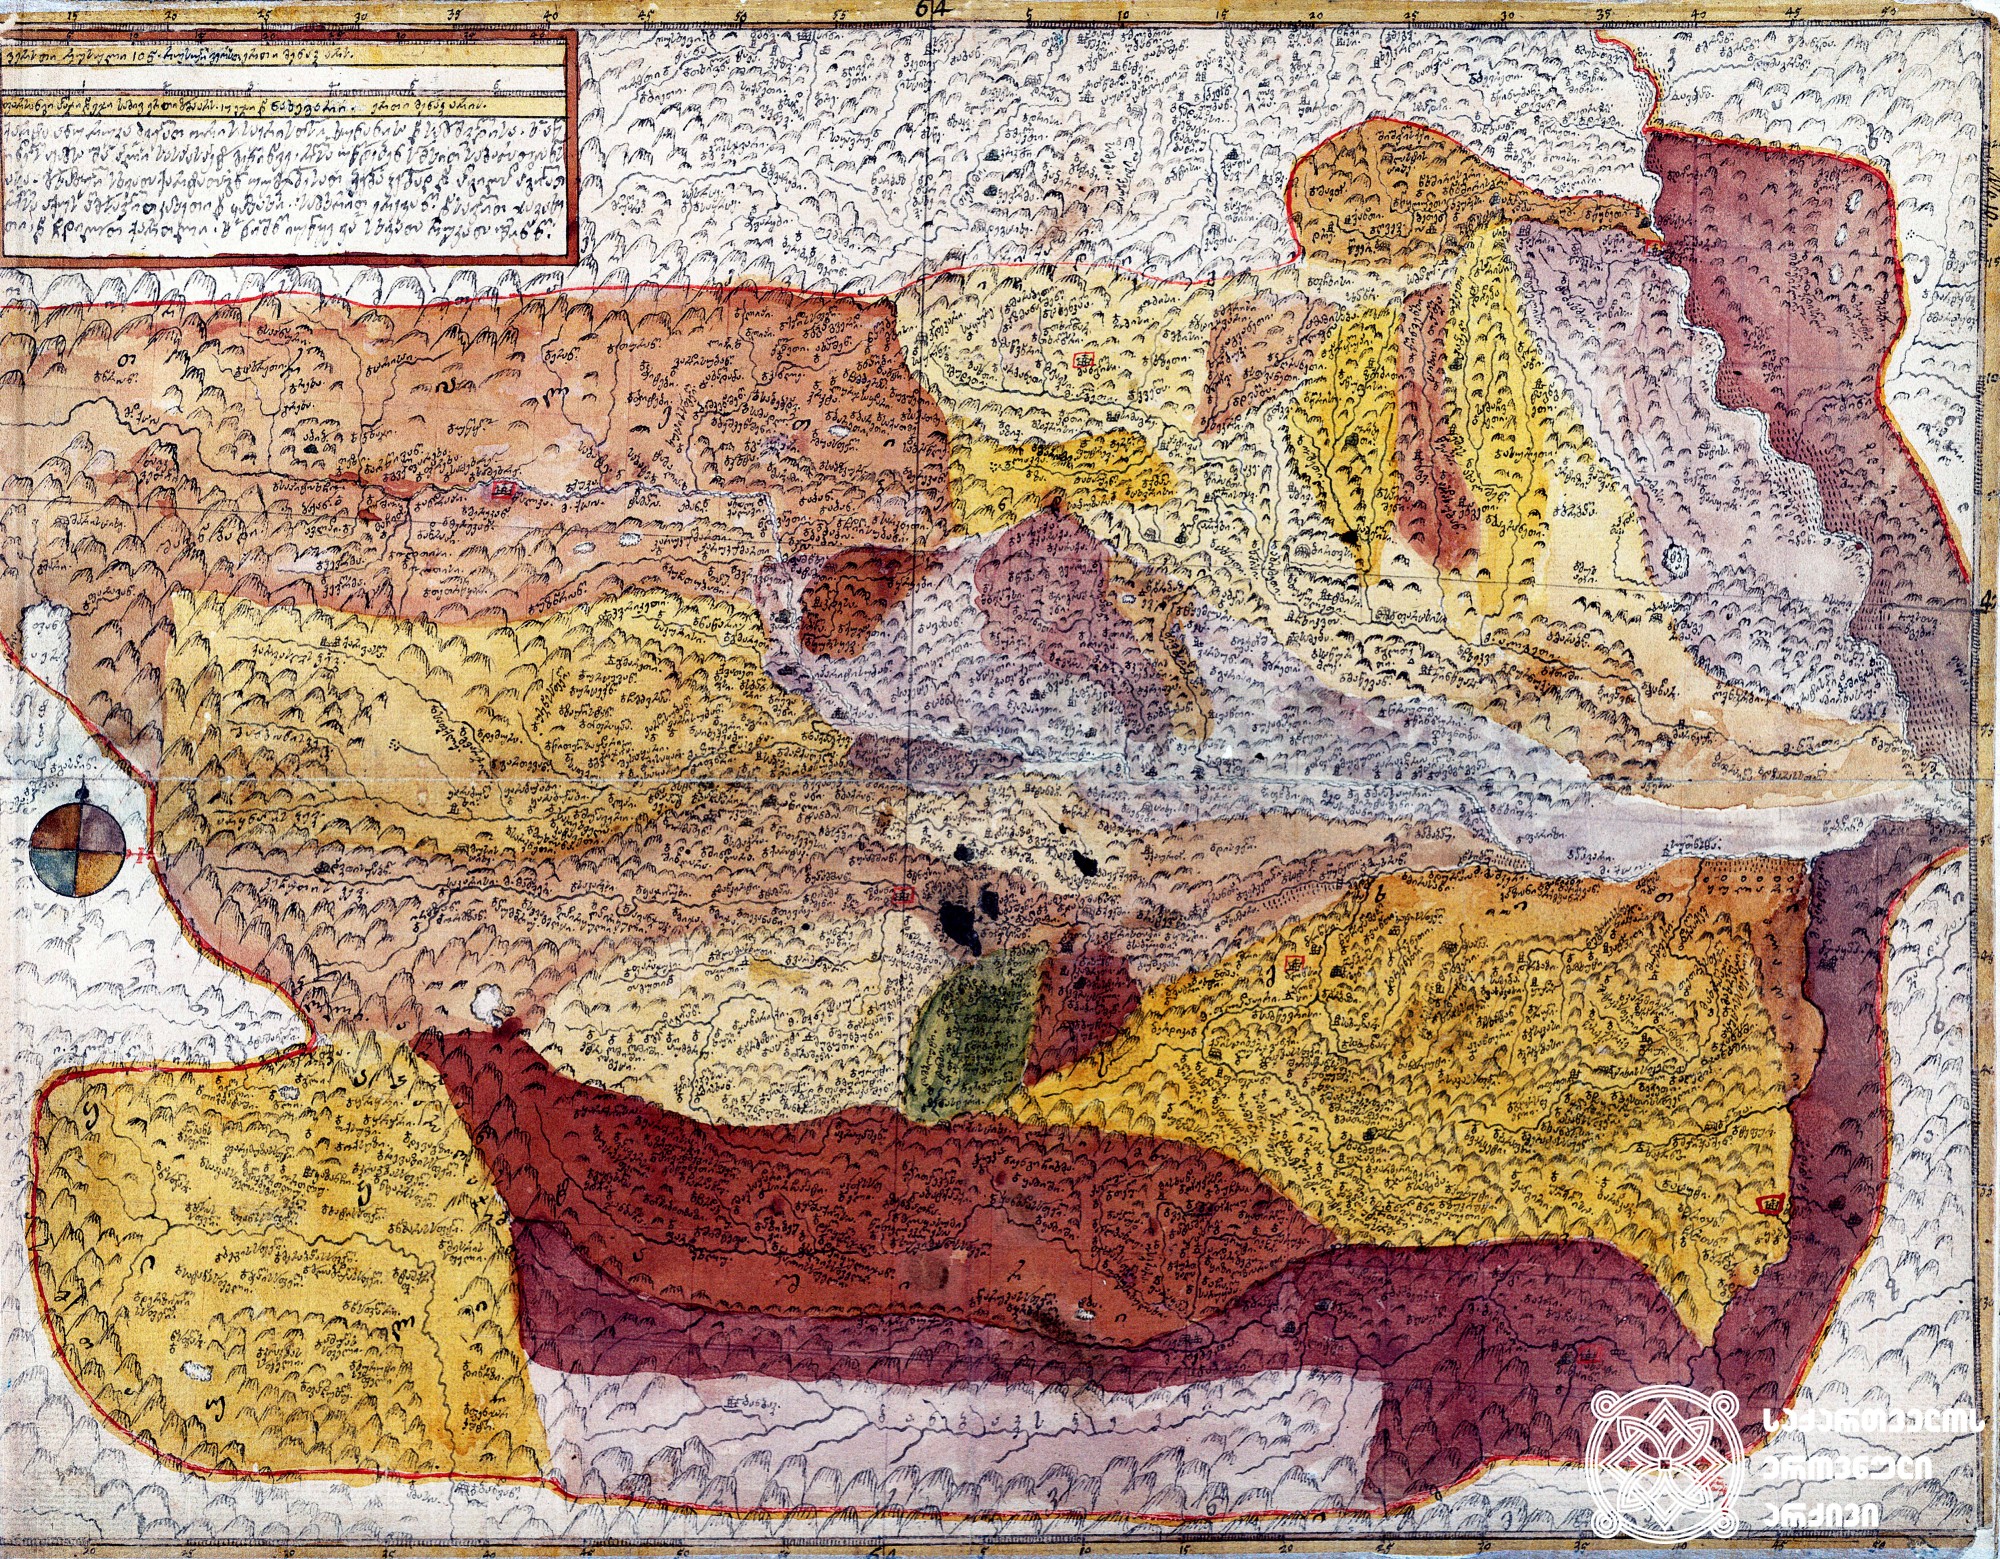 ვახუშტის ატლასი <br>
ხუნანისა და სამშვილდის საერისთავოები <br>
Atlas of Vakhushti <br>
The map of duchies of Khunani and Samshvilde <br>
„ქარტა ანუ რუკა ძველათ ორის საერისთოსი - ხუნანისა და სამშვილდისა, ხოლო აწინდელს ჟამსა შინა პირველი სასპასპეტო მეწინავე, რომელსა უწოდებენ სომხით საბარათიანოსასა, მოხაზული სხვათა ქართატაგან უუმჯობესათ ჴეობა-ჴეობად და ადგილად-ადგილათ, რომელსა აქუს აღმოსავლით კახეთი და ყაზახი, სამხრით ერევანი, დასავლით ჯავახეთი და ჩდილოთ ქართლი. ხოლო ნიშნი იუწყე ვითარცა სხვათა რუკათა შინანი“.